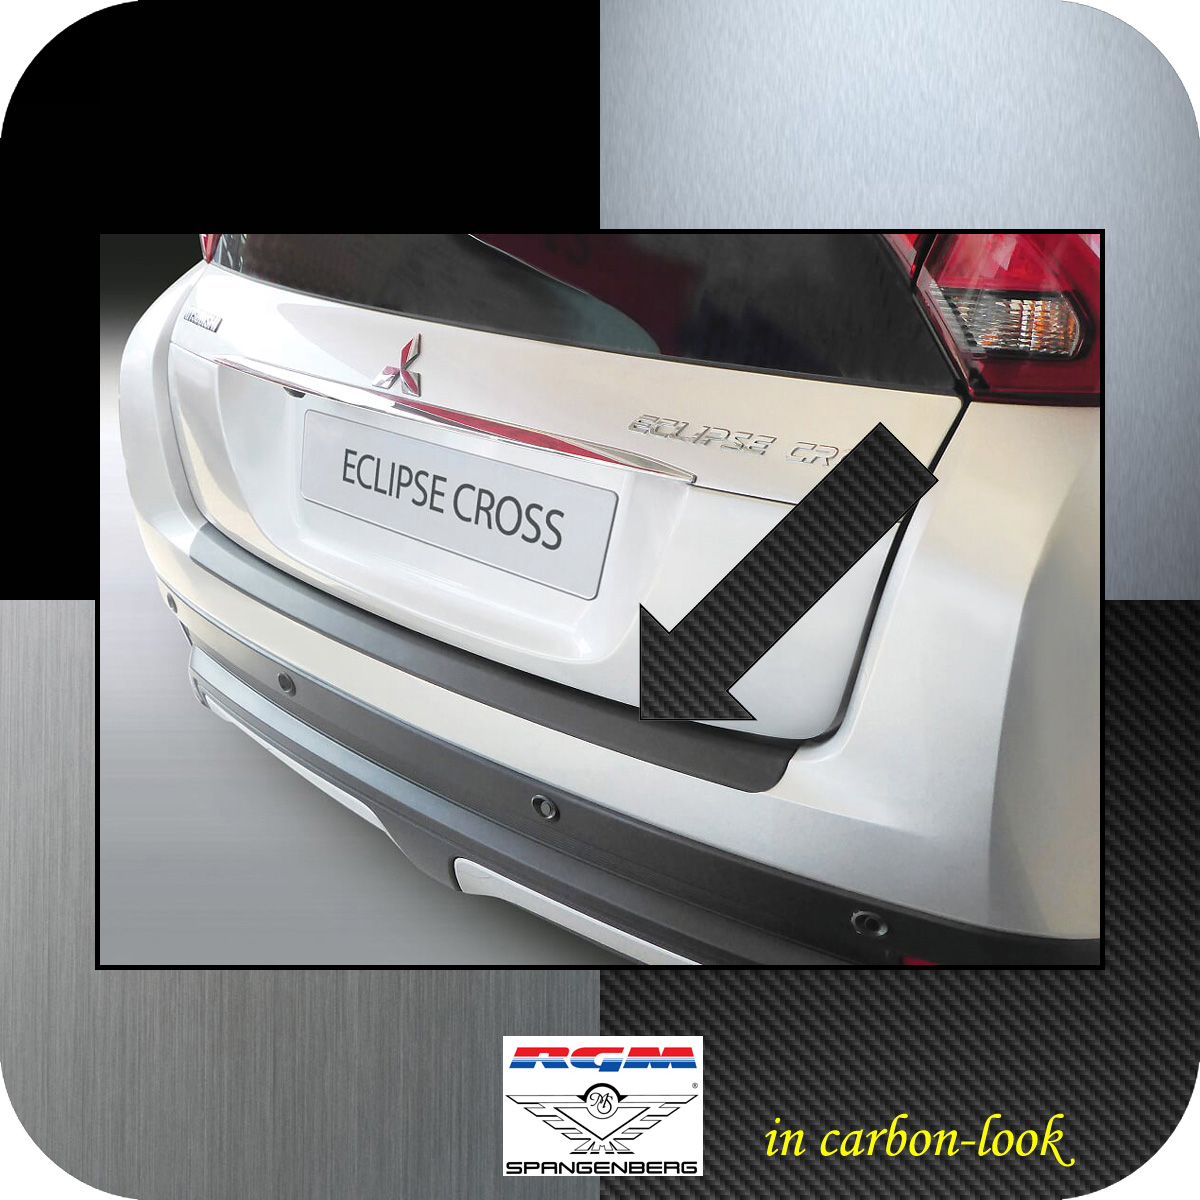 Ladekantenschutz Carbon-Look Mitsubishi Eclipse Cross vor Mopf 2018-20 3509748